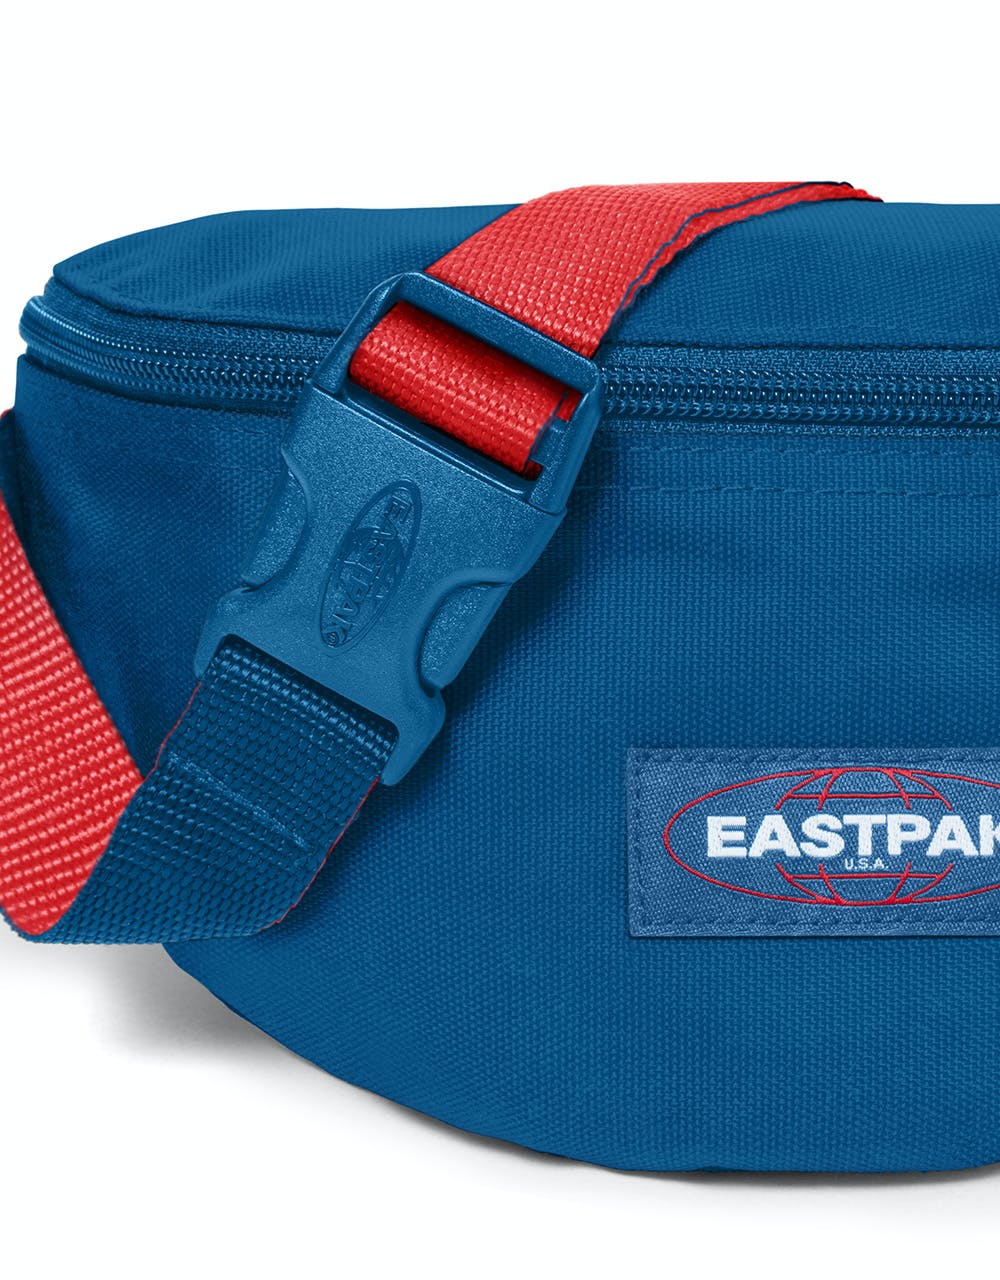 Eastpak Springer Cross Body Bag - Blakout Urban